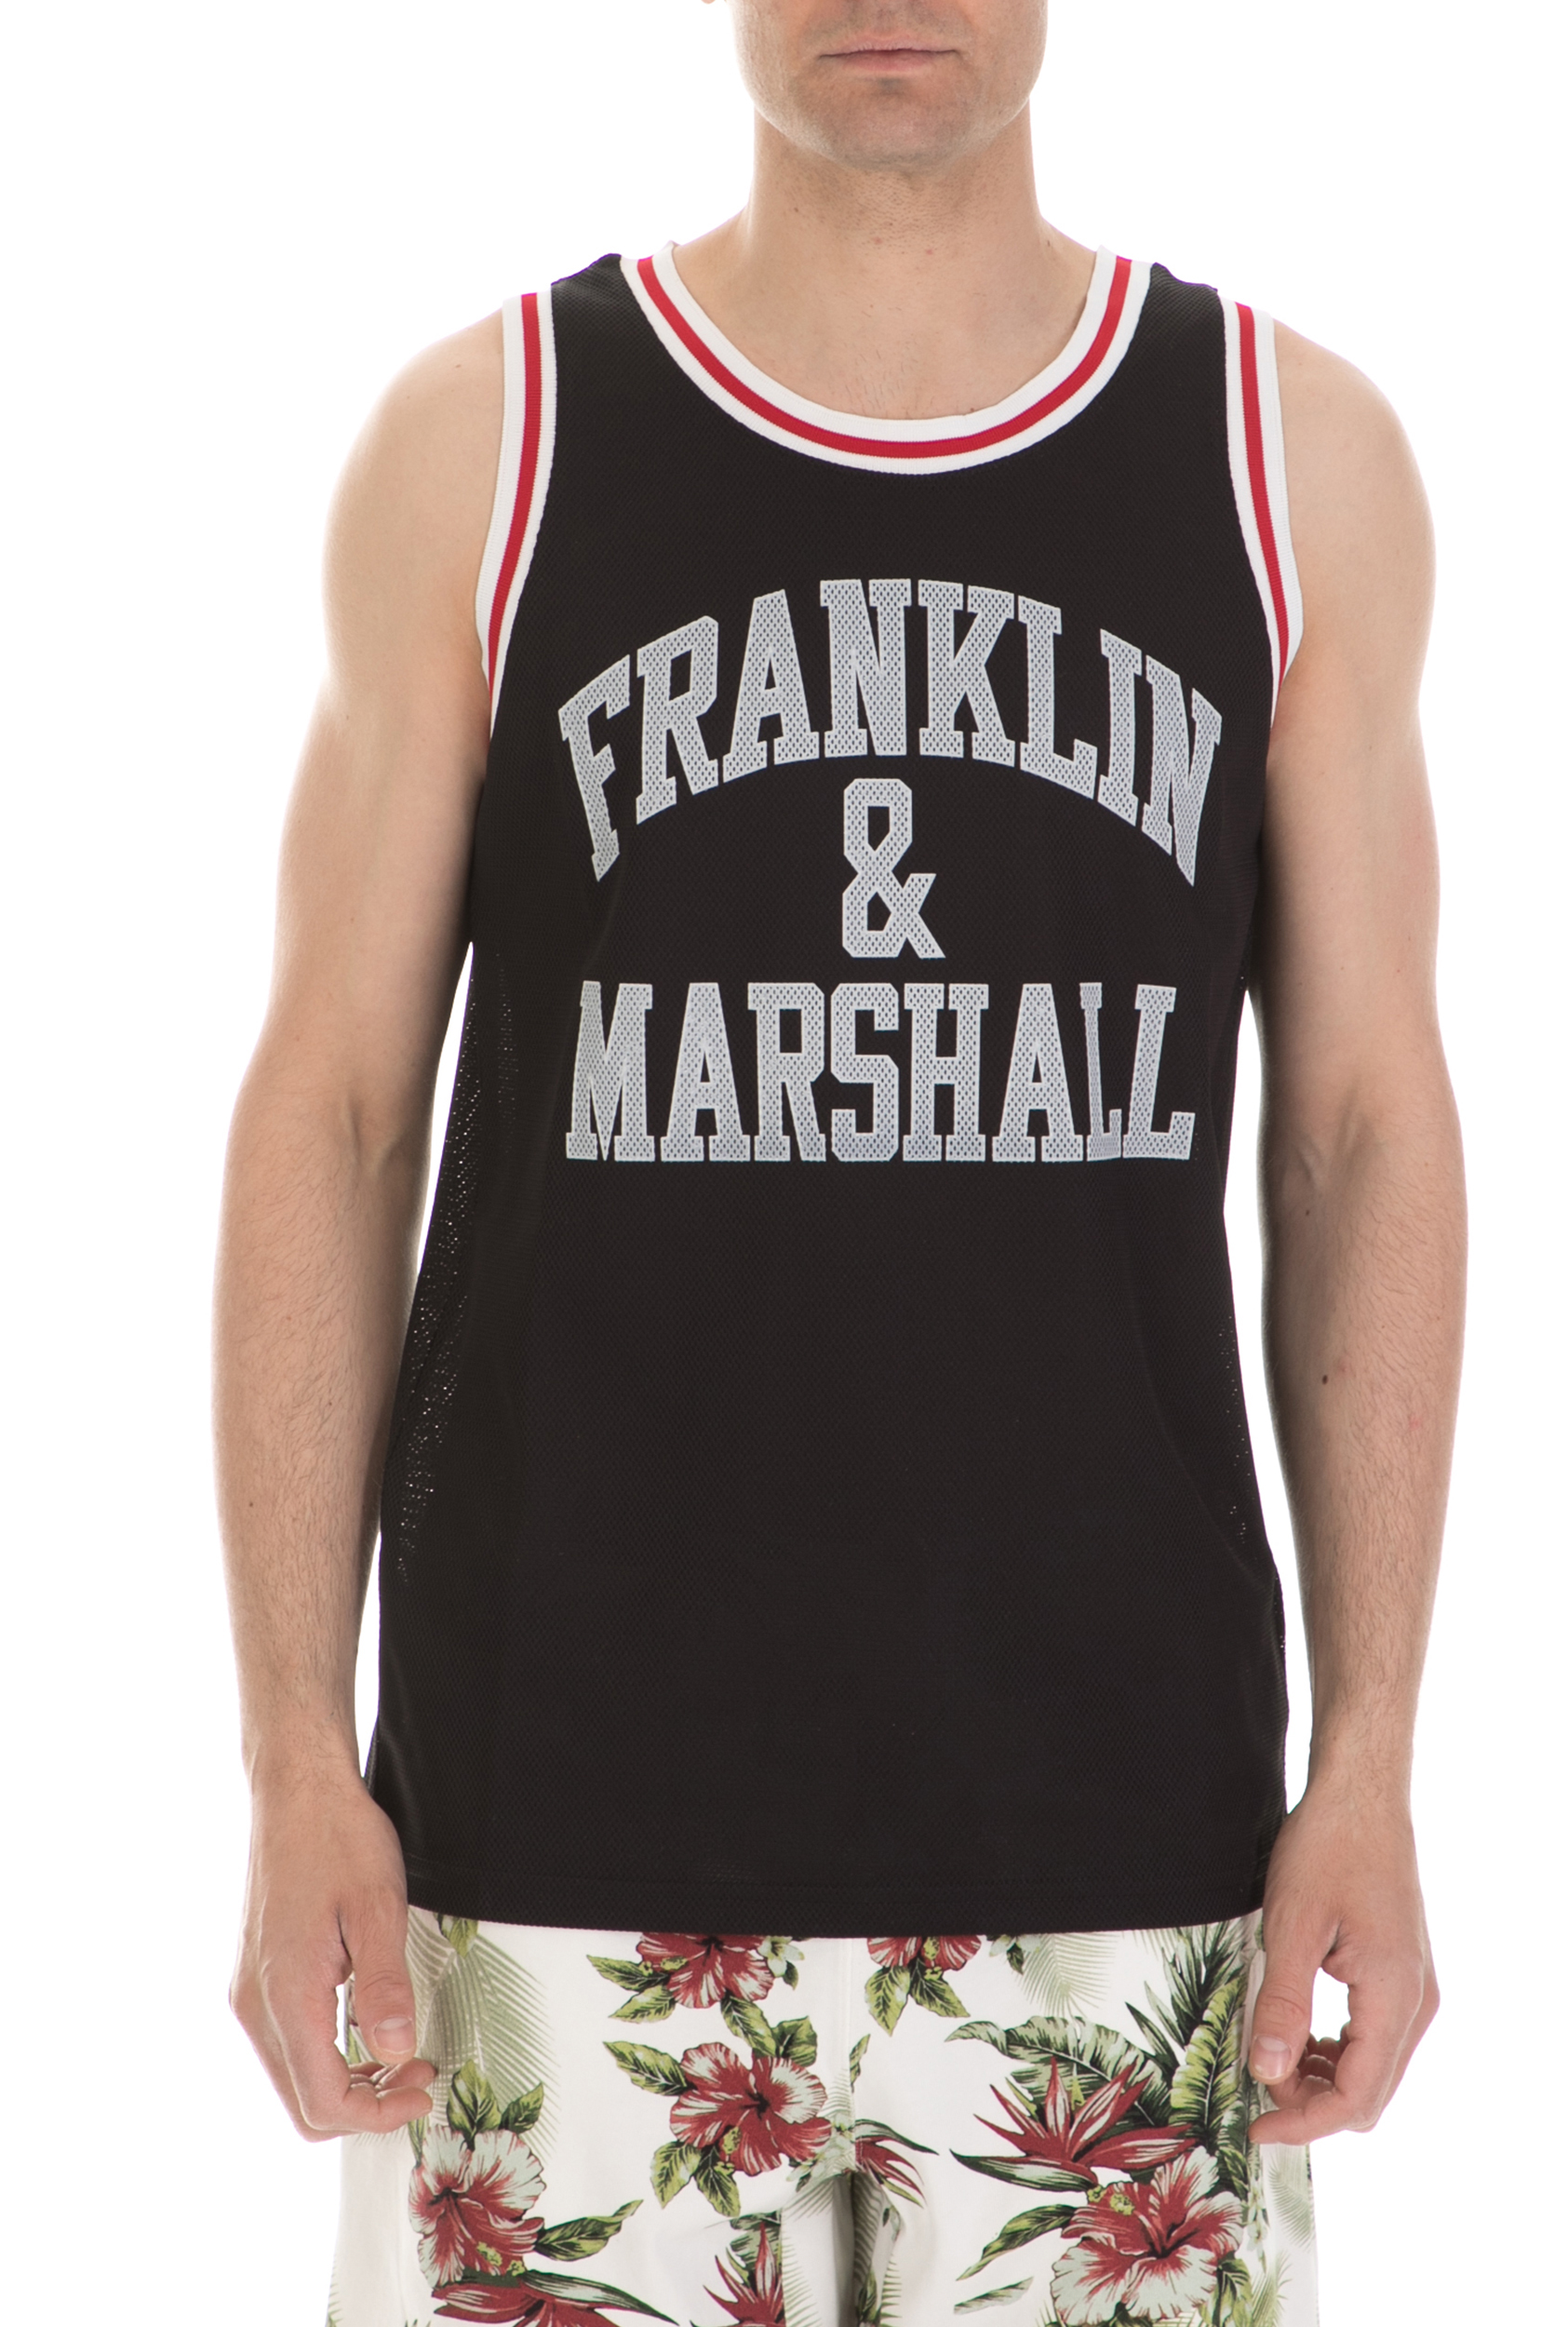 FRANKLIN & MARSHALL - Ανδρική αμάνικη μπλούζα FRANKLIN & MARSHALL μαύρη Ανδρικά/Ρούχα/Μπλούζες/Αμάνικες